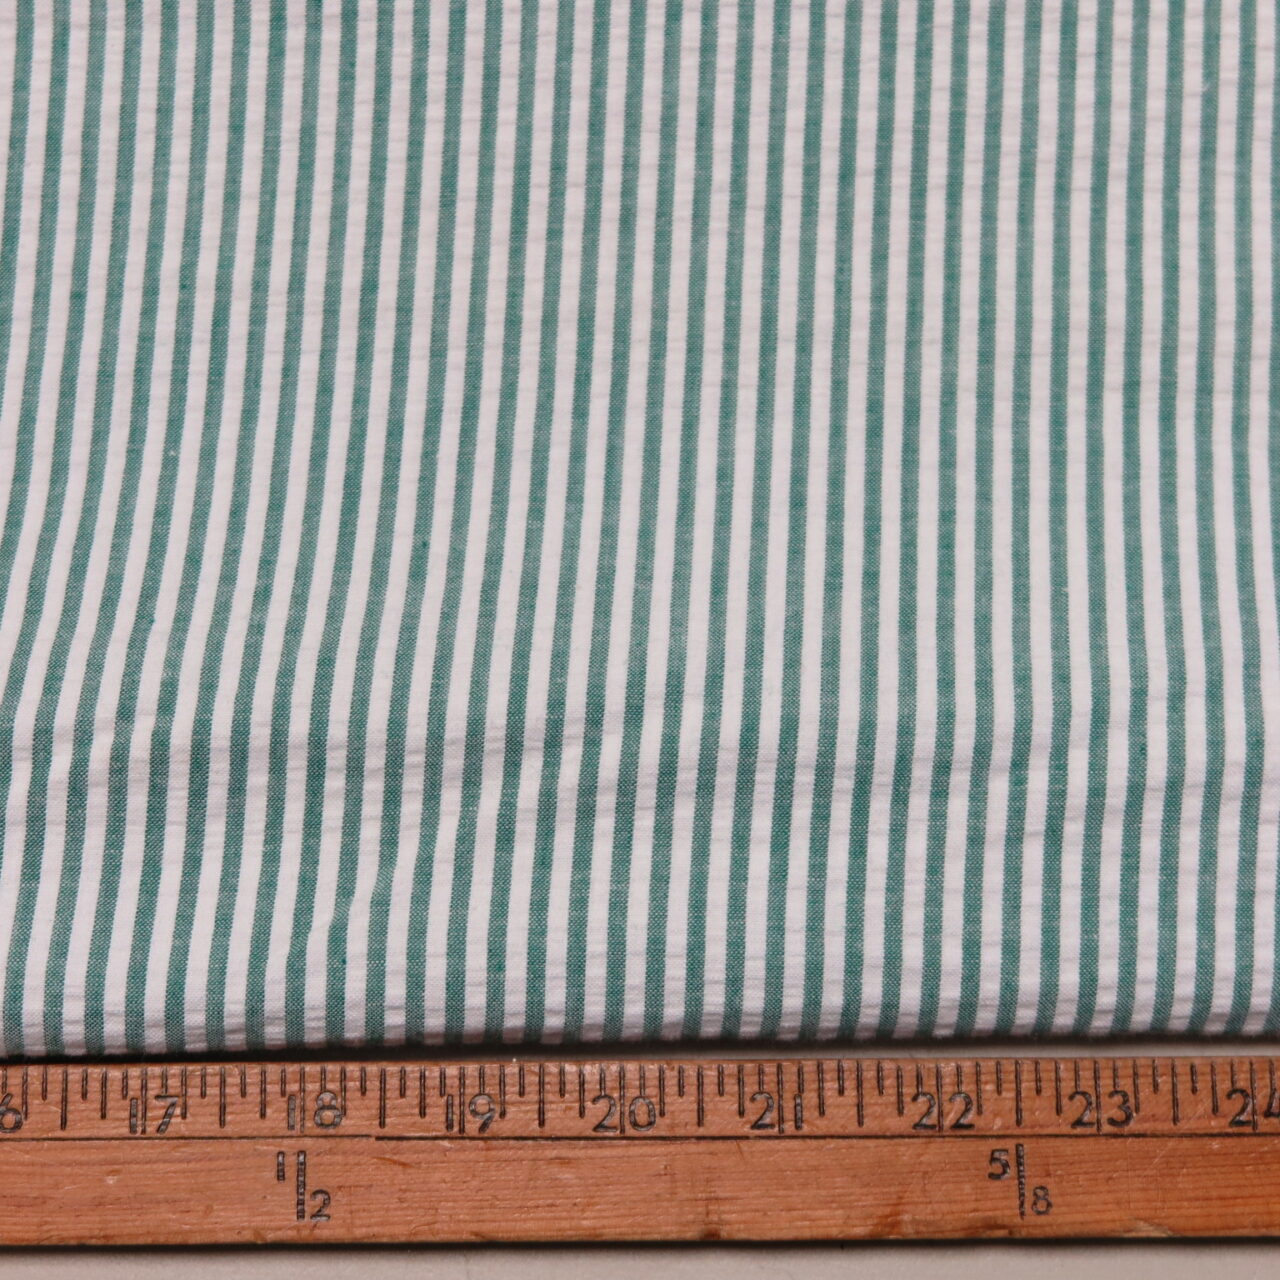 Seersucker (ish) Cotton Fabric - Off White – Stitches